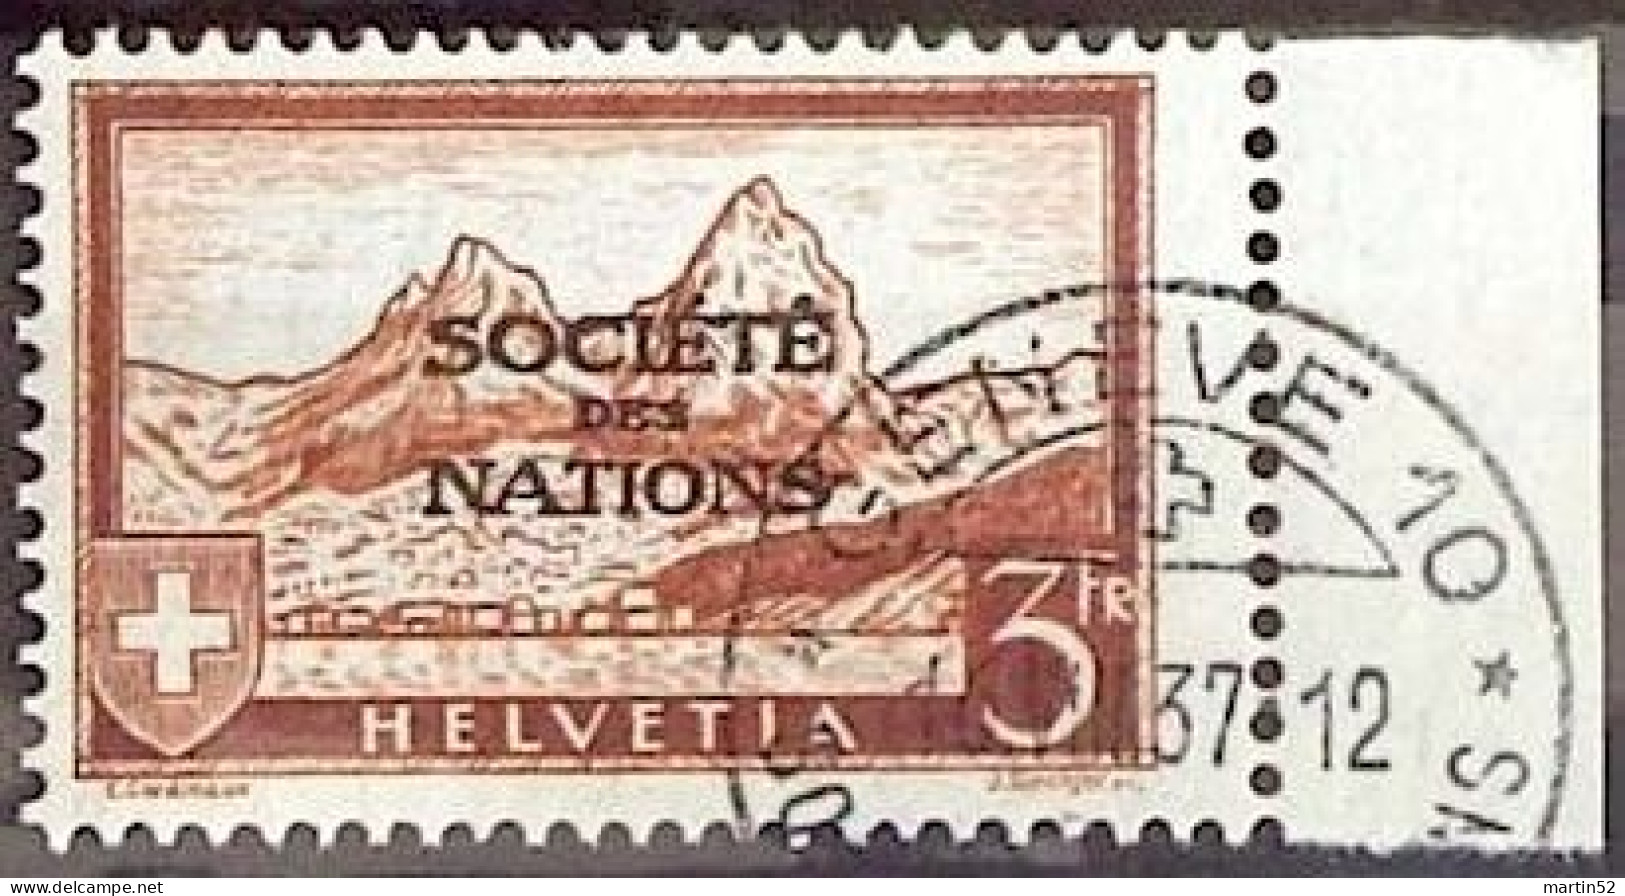 RARE Schweiz Suisse 1937: Dienst III Service SOCIÉTÉ DES NATIONS (SdN) Zu+Mi 56 Mit ⊙ GENÈVE 16.VIII.37 (Zu CHF 300.00) - Officials